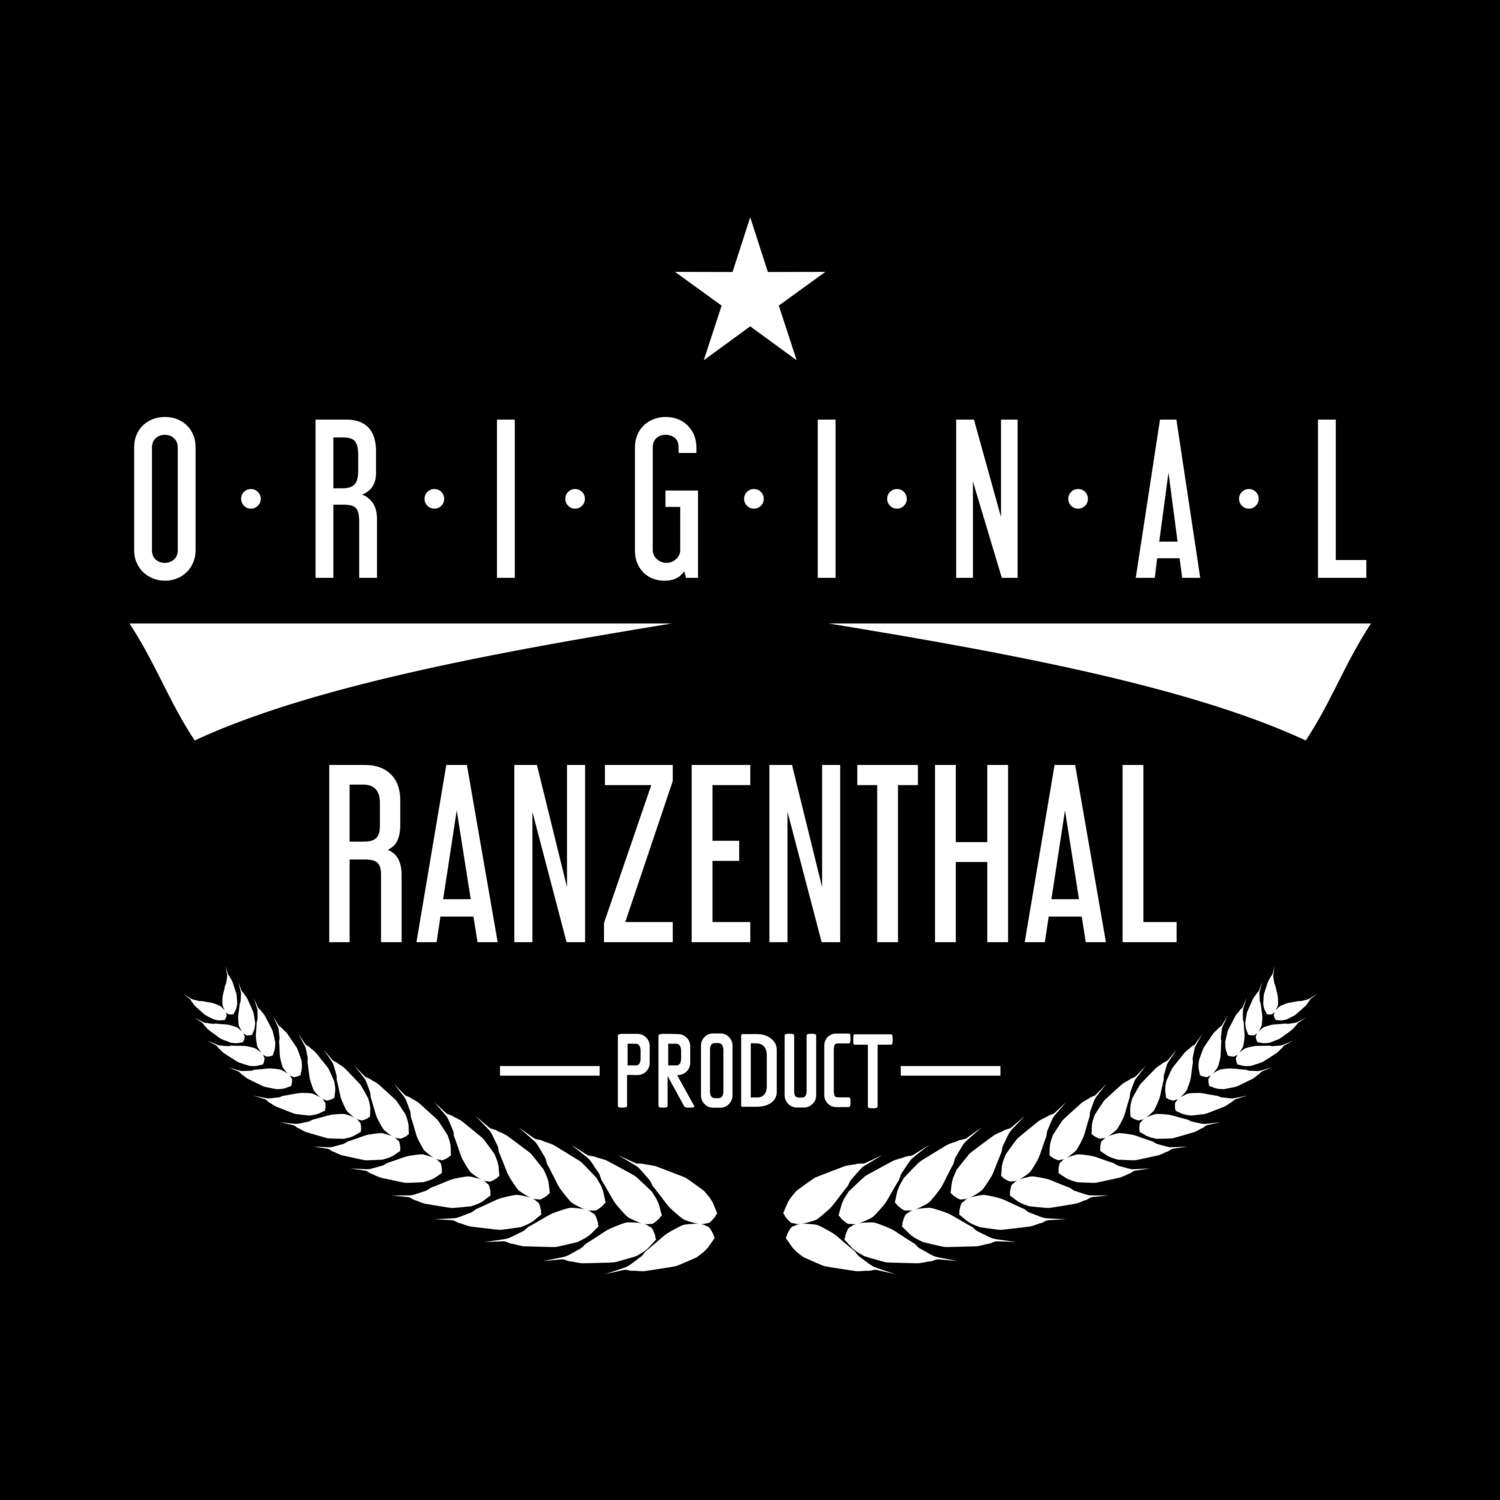 Ranzenthal T-Shirt »Original Product«